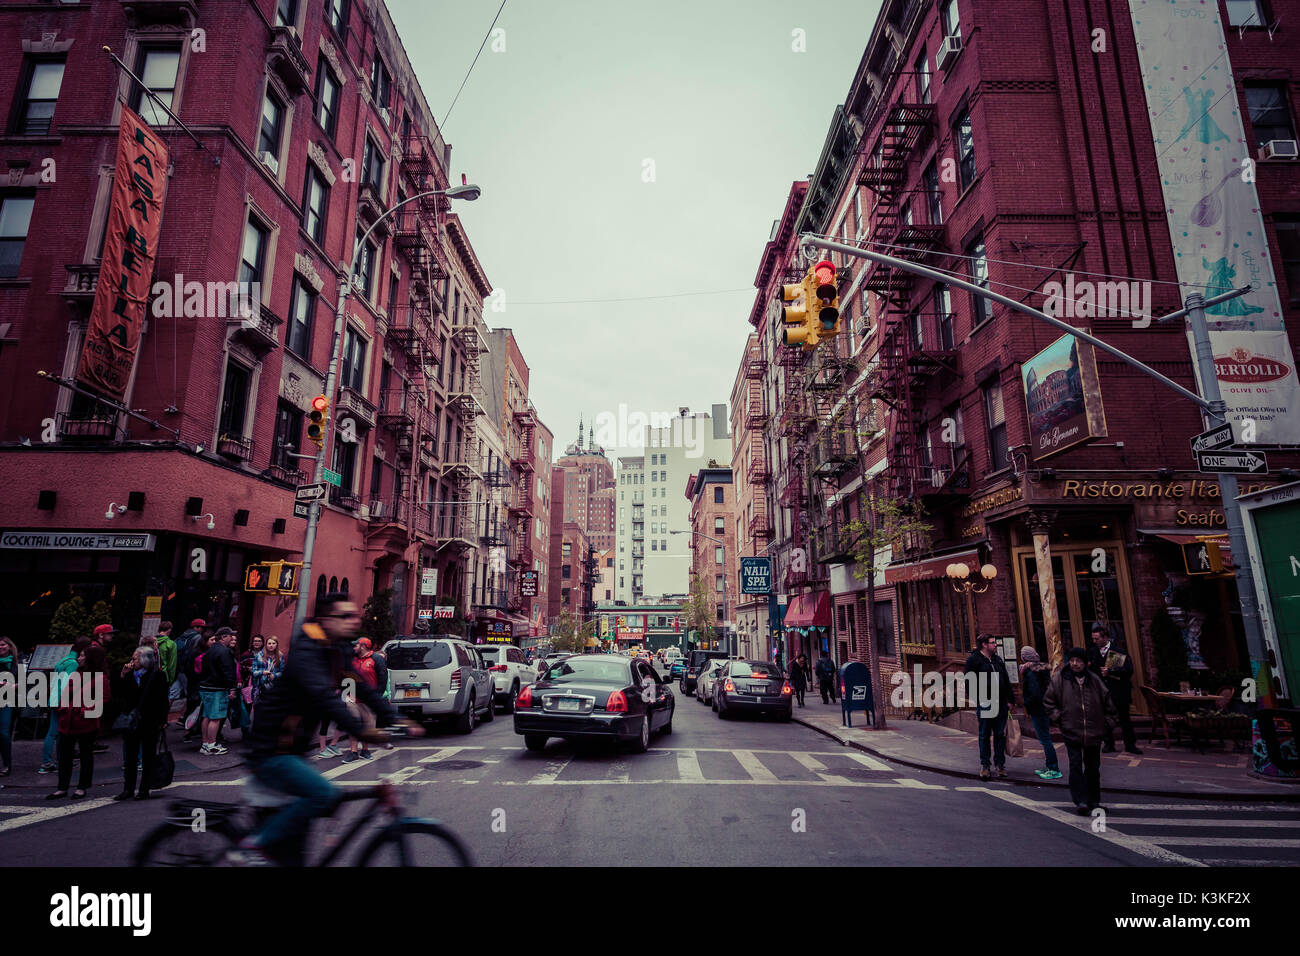 Streetview con traffico e case in mattoni, le scale antincendio, Architettura tipica in Little Italy, Manhattan, New York, Stati Uniti d'America Foto Stock